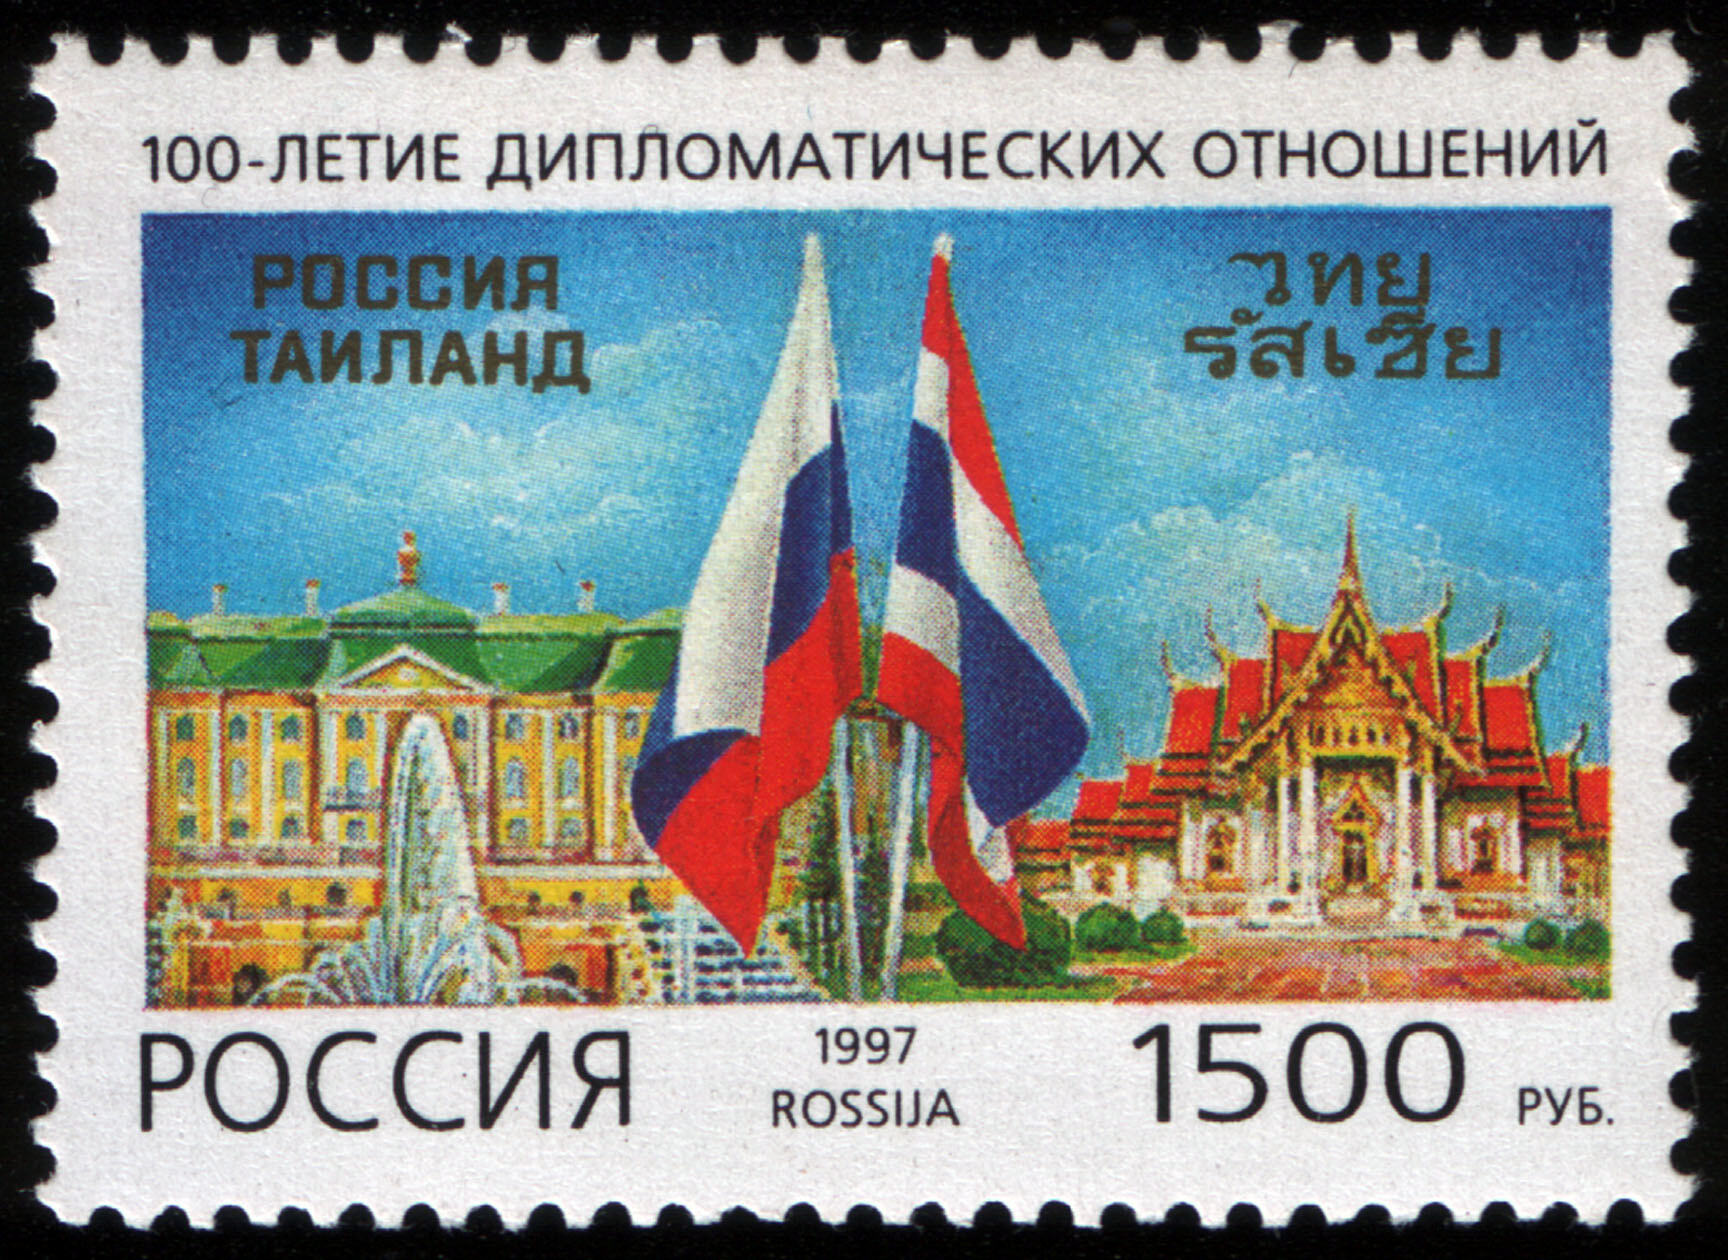 El centenario del establecimiento de las relaciones diplomáticas entre Rusia y Tailandia. 20 de junio de 1997.